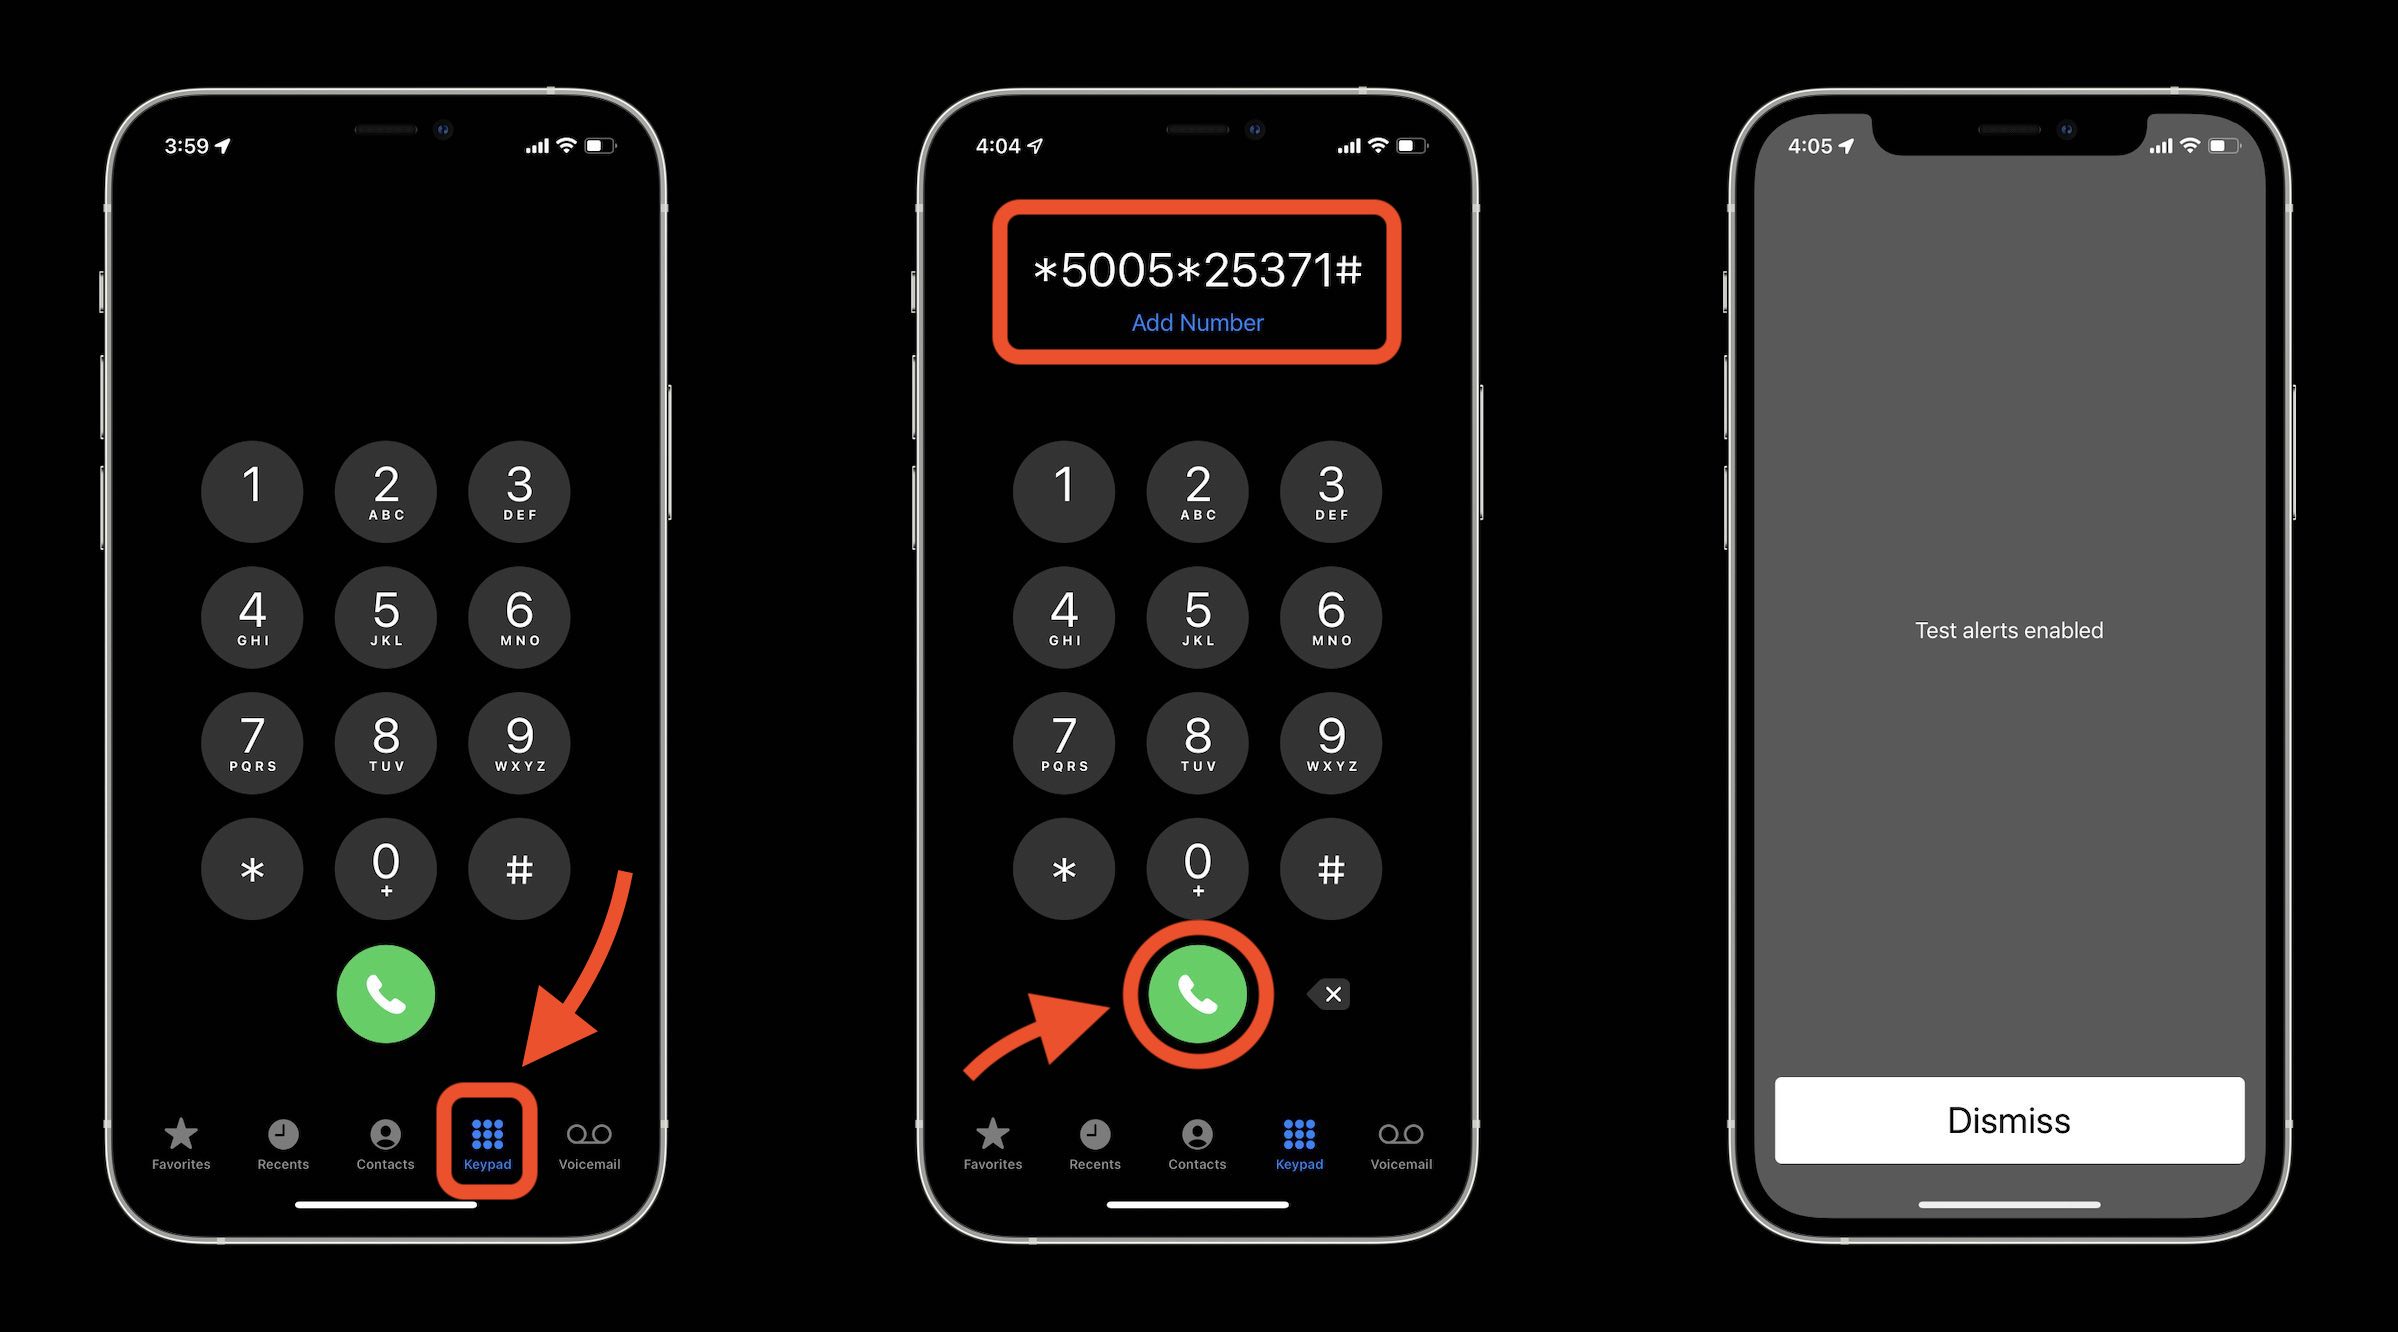  hogyan lehet bekapcsolni/kikapcsolni a teszt vészhelyzeti riasztásokat az iPhone-on az Egyesült Államokban-tárcsázza *5005 * 25371# a telefonos alkalmazásban